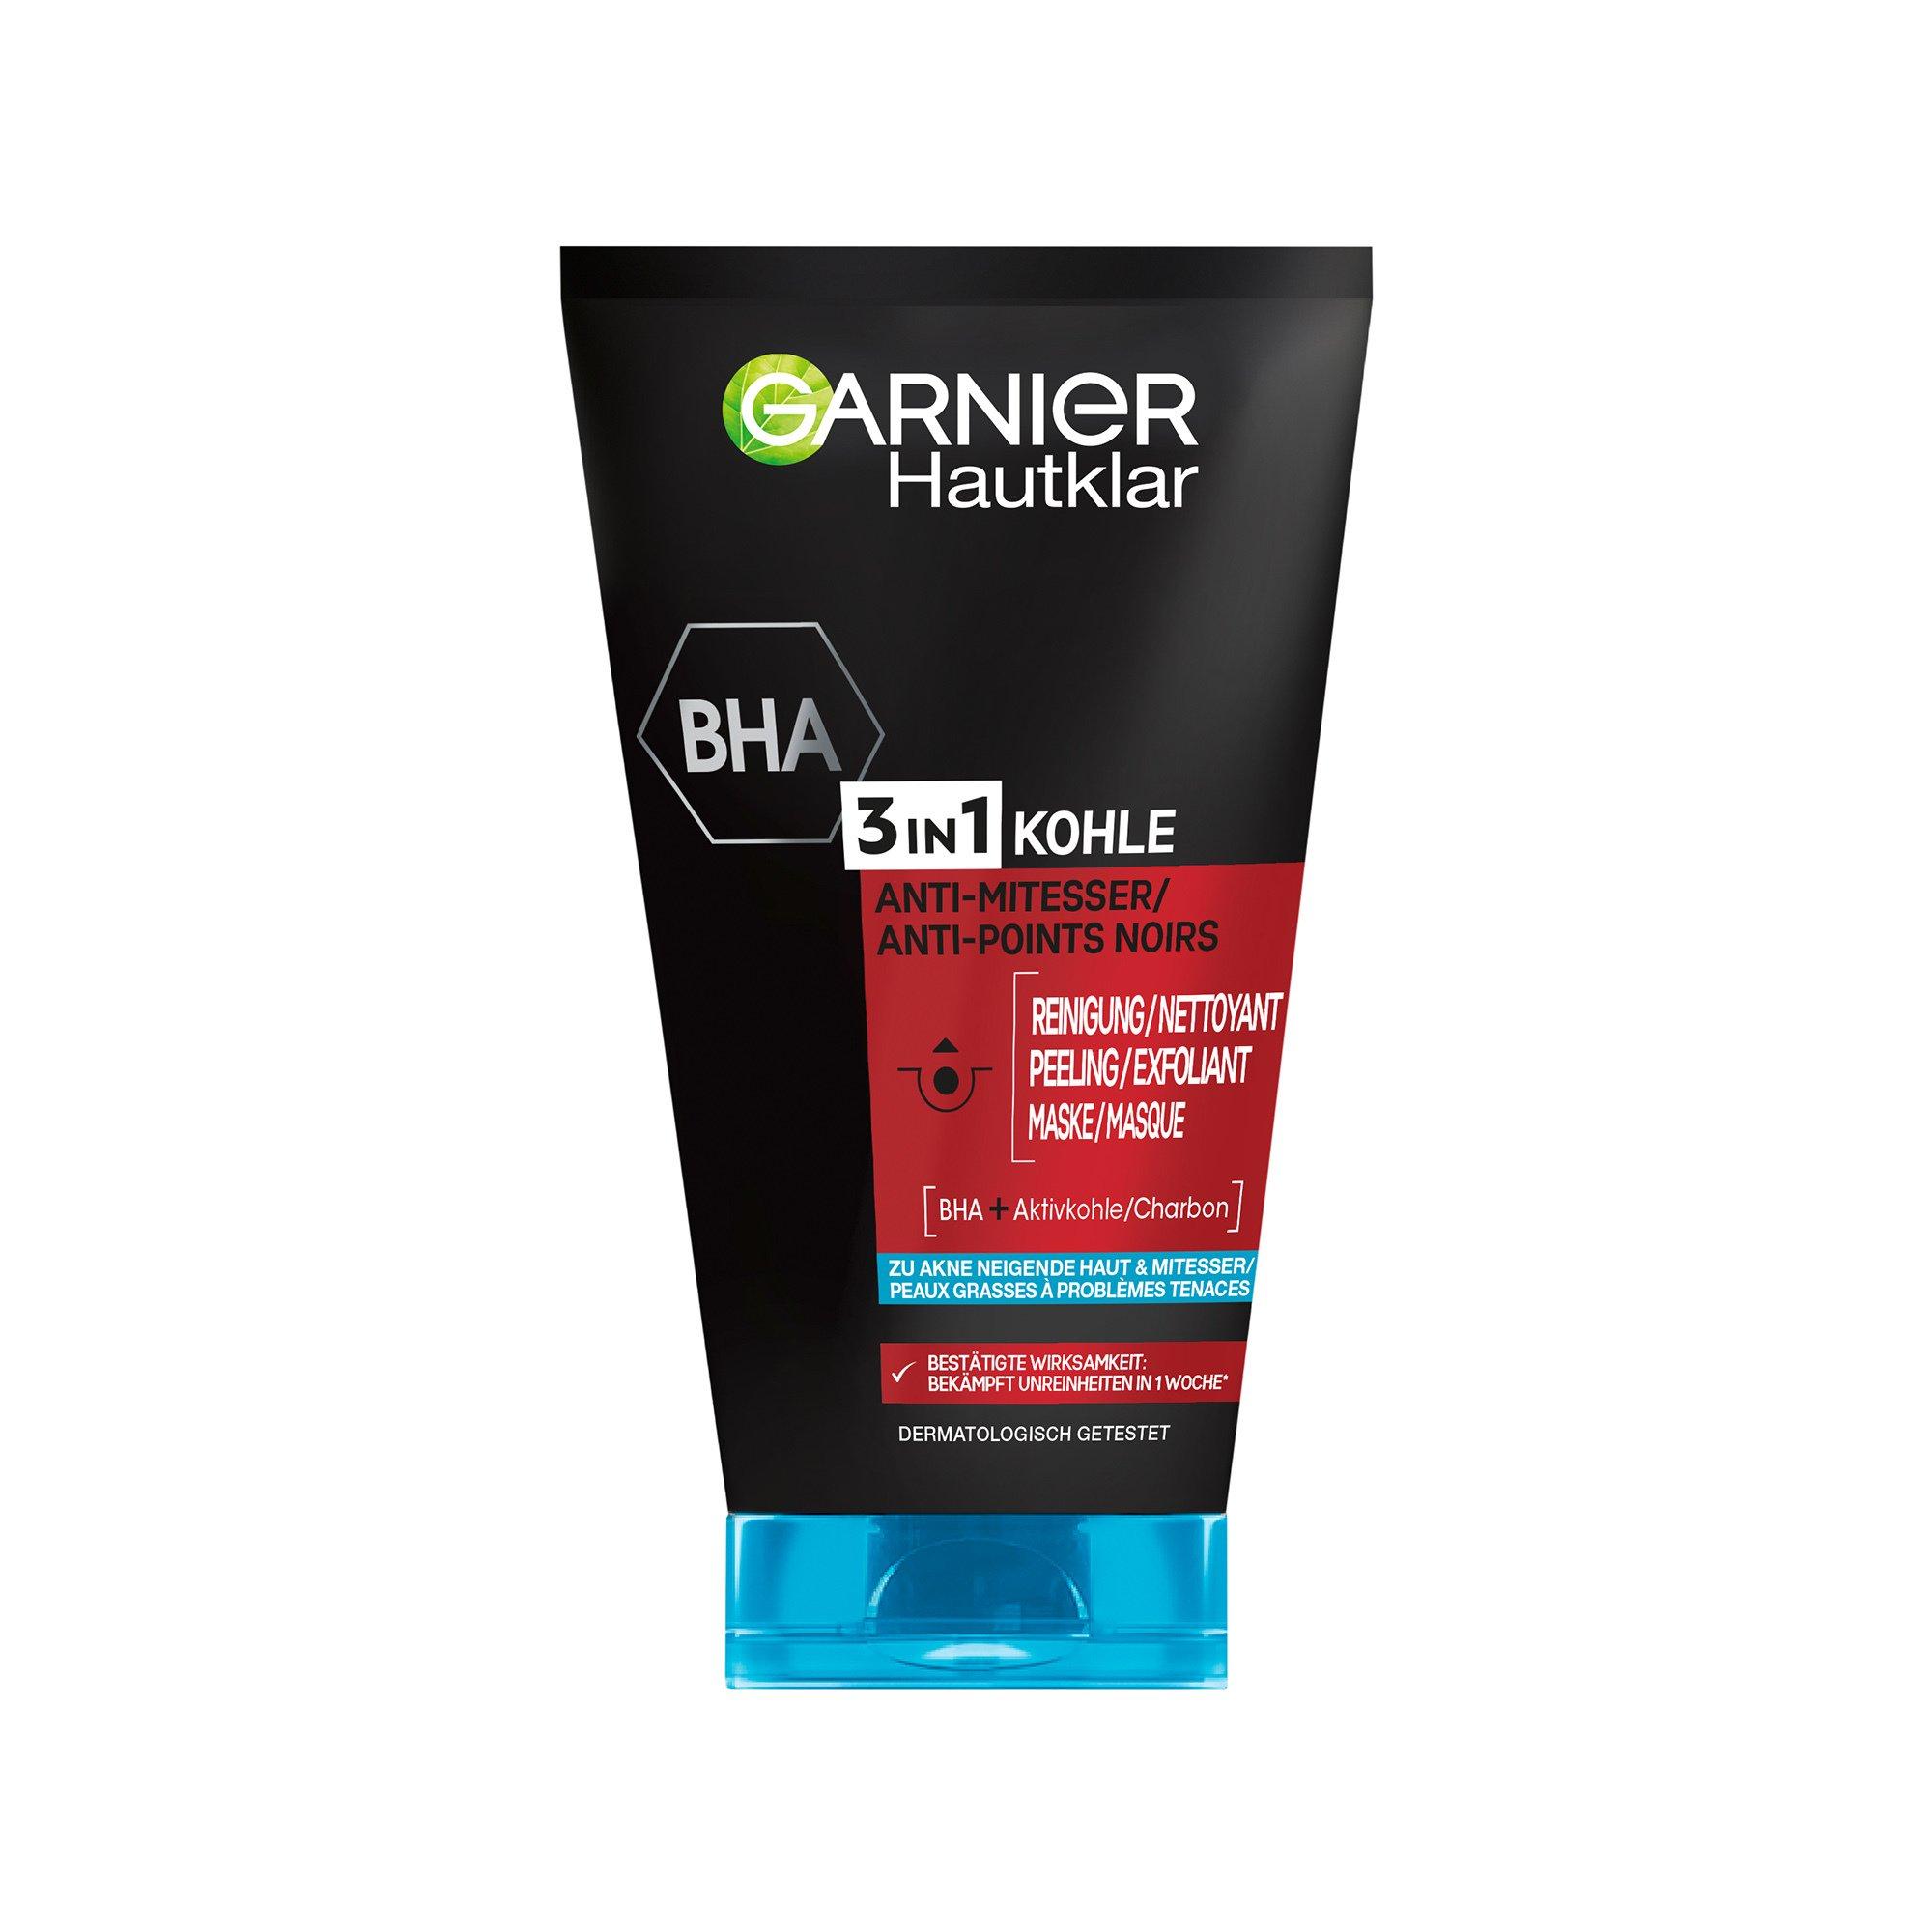 GARNIER Pure active Hautklar online Peeling Anti-Mitesser - Reinigung, 3-in-1 | MANOR und Maske kaufen